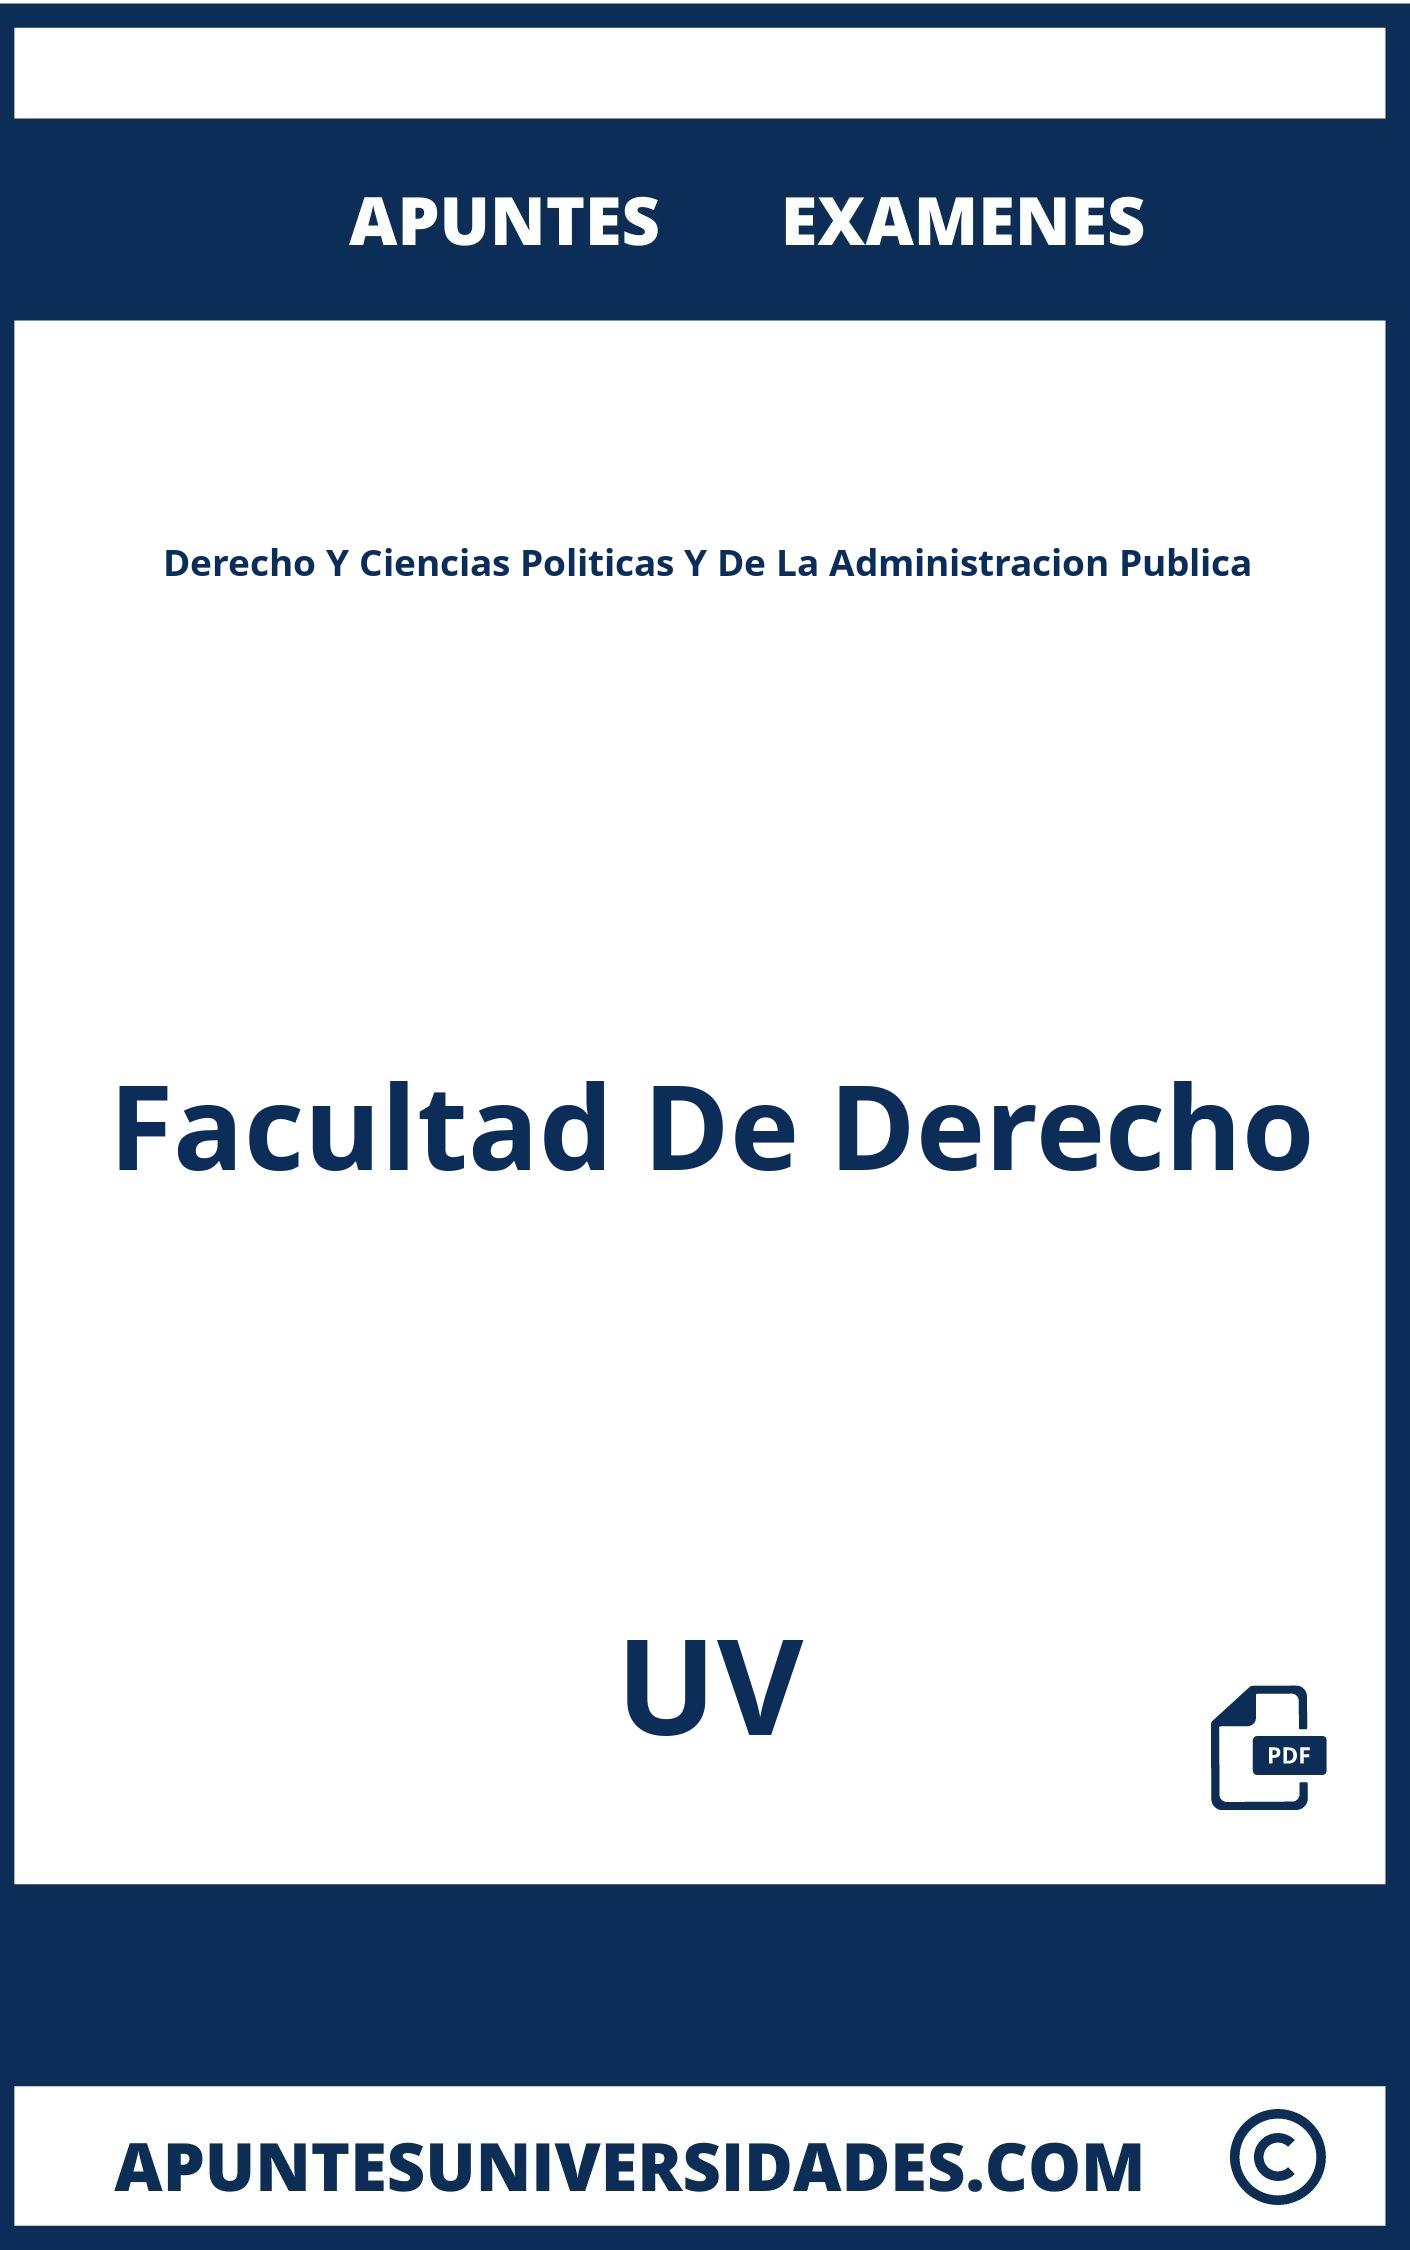 Examenes Derecho Y Ciencias Politicas Y De La Administracion Publica UV y Apuntes